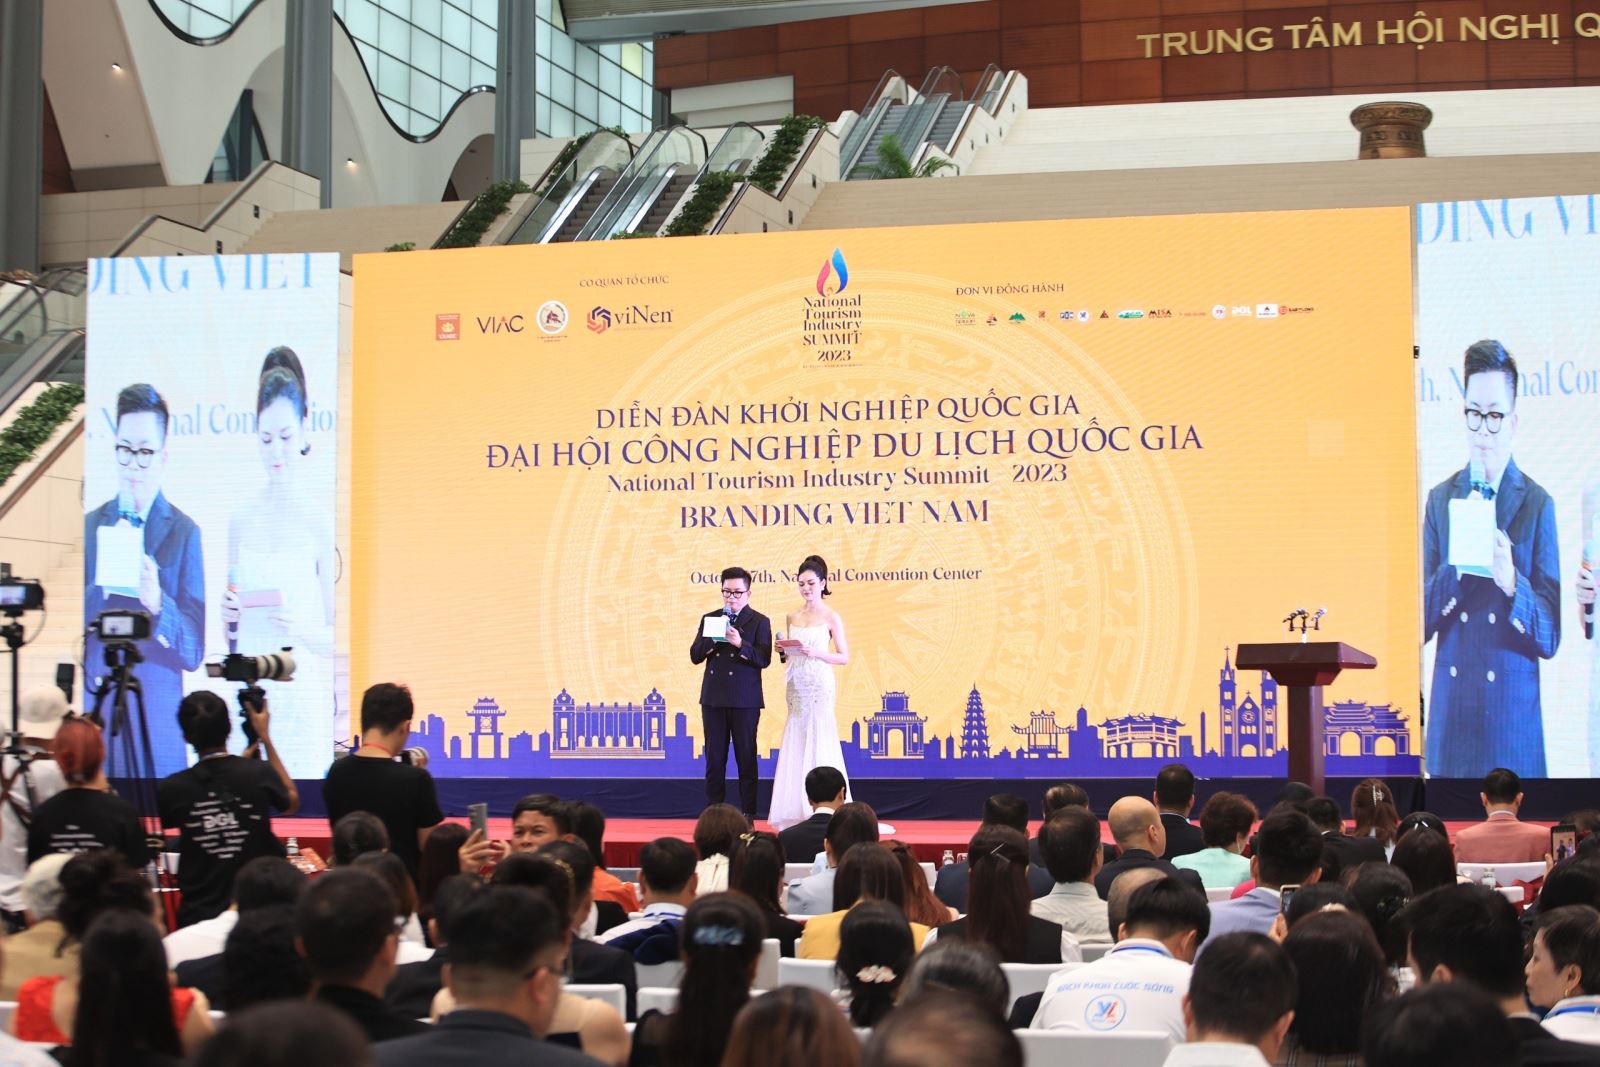 “Đại hội Công nghiệp Du lịch Quốc gia” lần thứ I - góp phần thúc đẩy du lịch Việt Nam phát triển